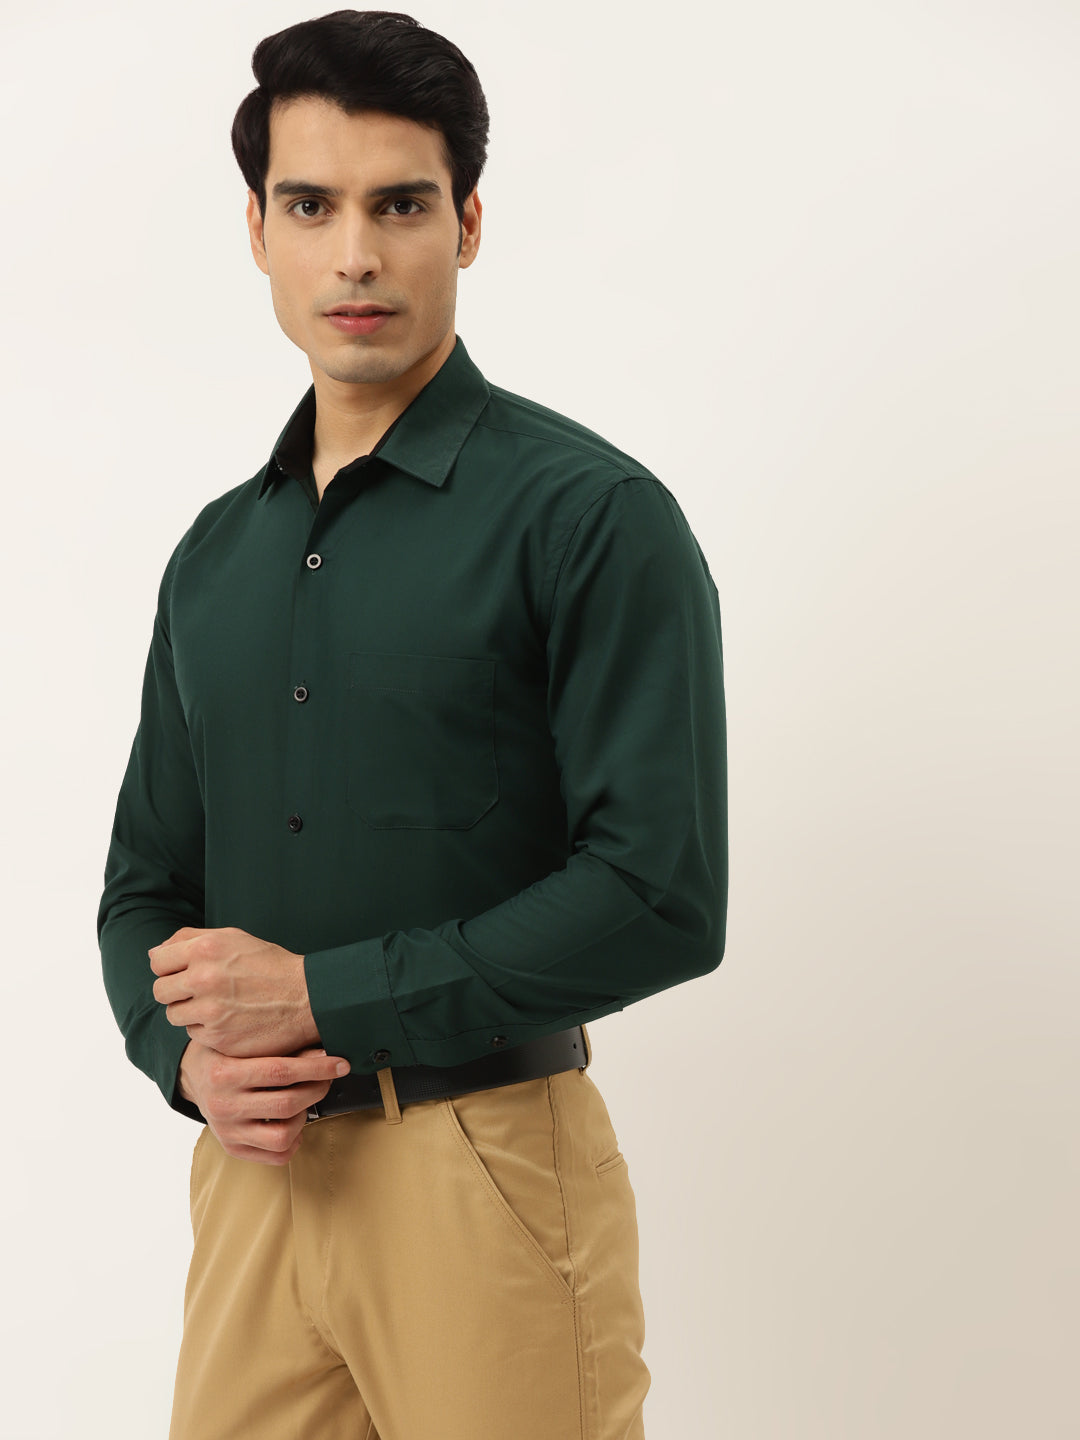 Men's Olive Green Formal Shirt with black detailing ( SF 411Olive ) - Jainish